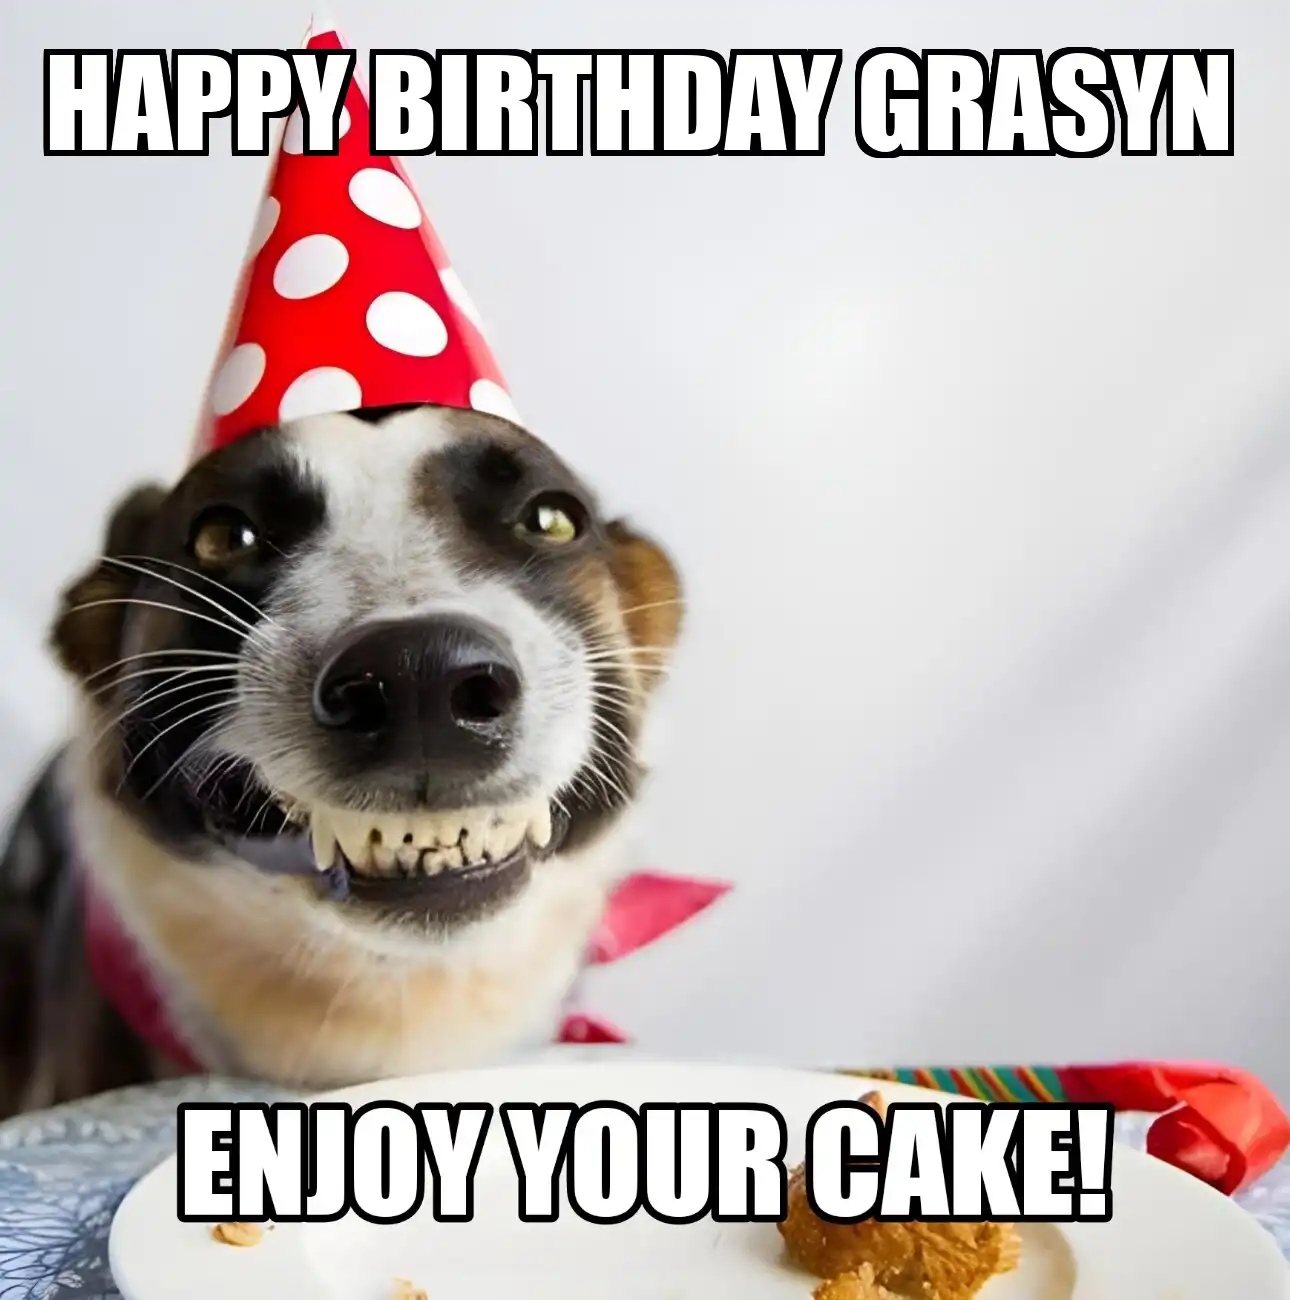 Happy Birthday Grasyn Enjoy Your Cake Dog Meme